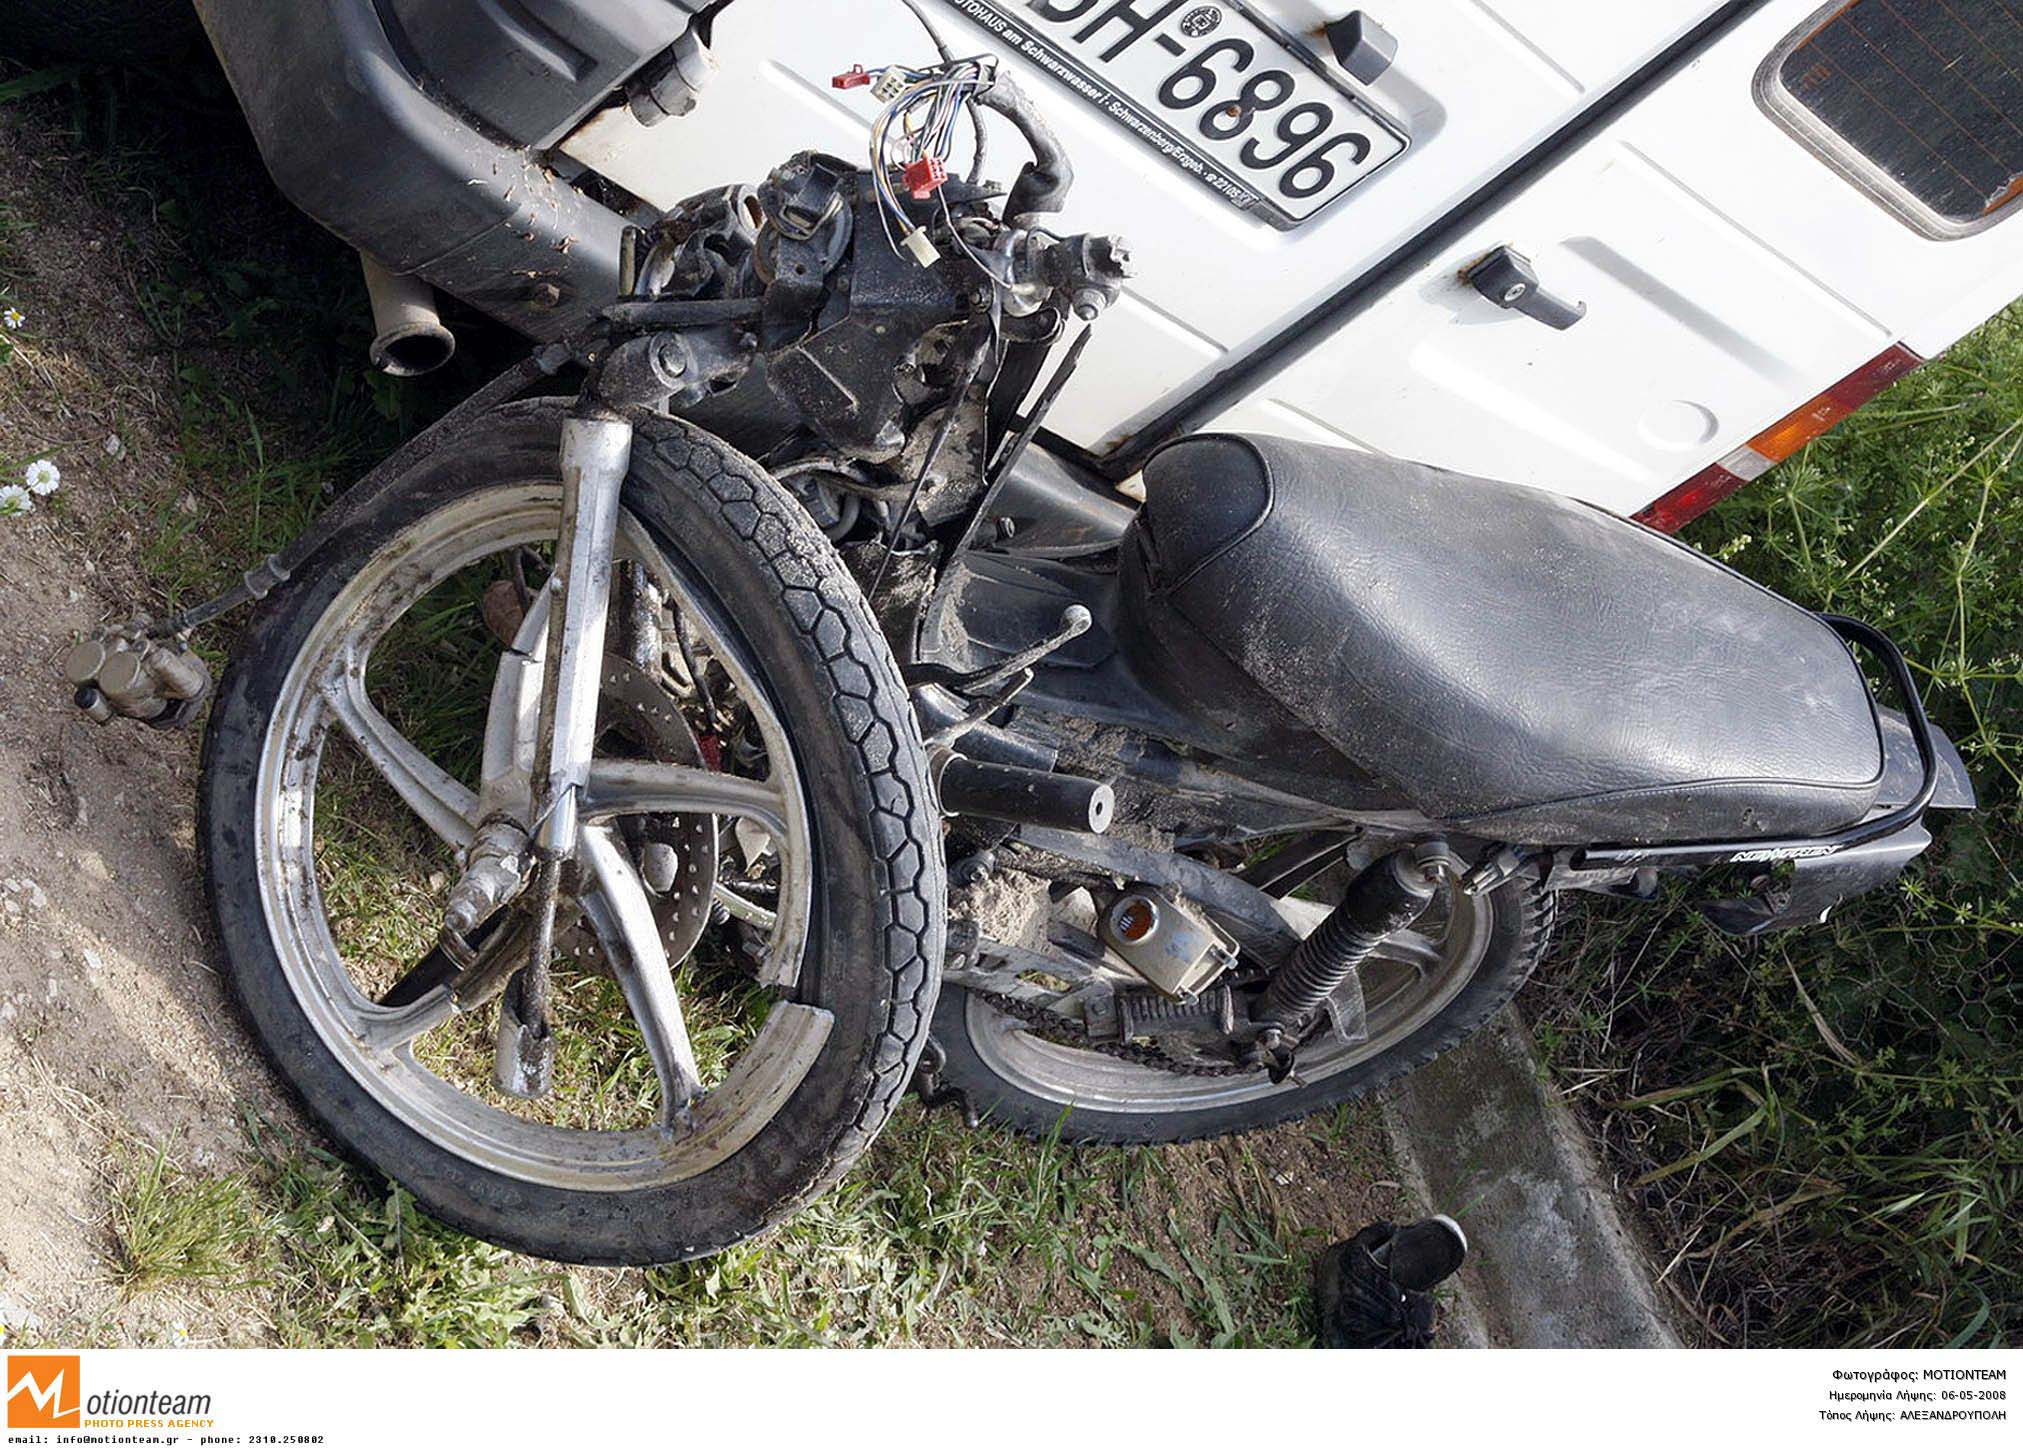 Δυστύχημα με 20χρονο μοτοσικλετιστή στο Βόλο